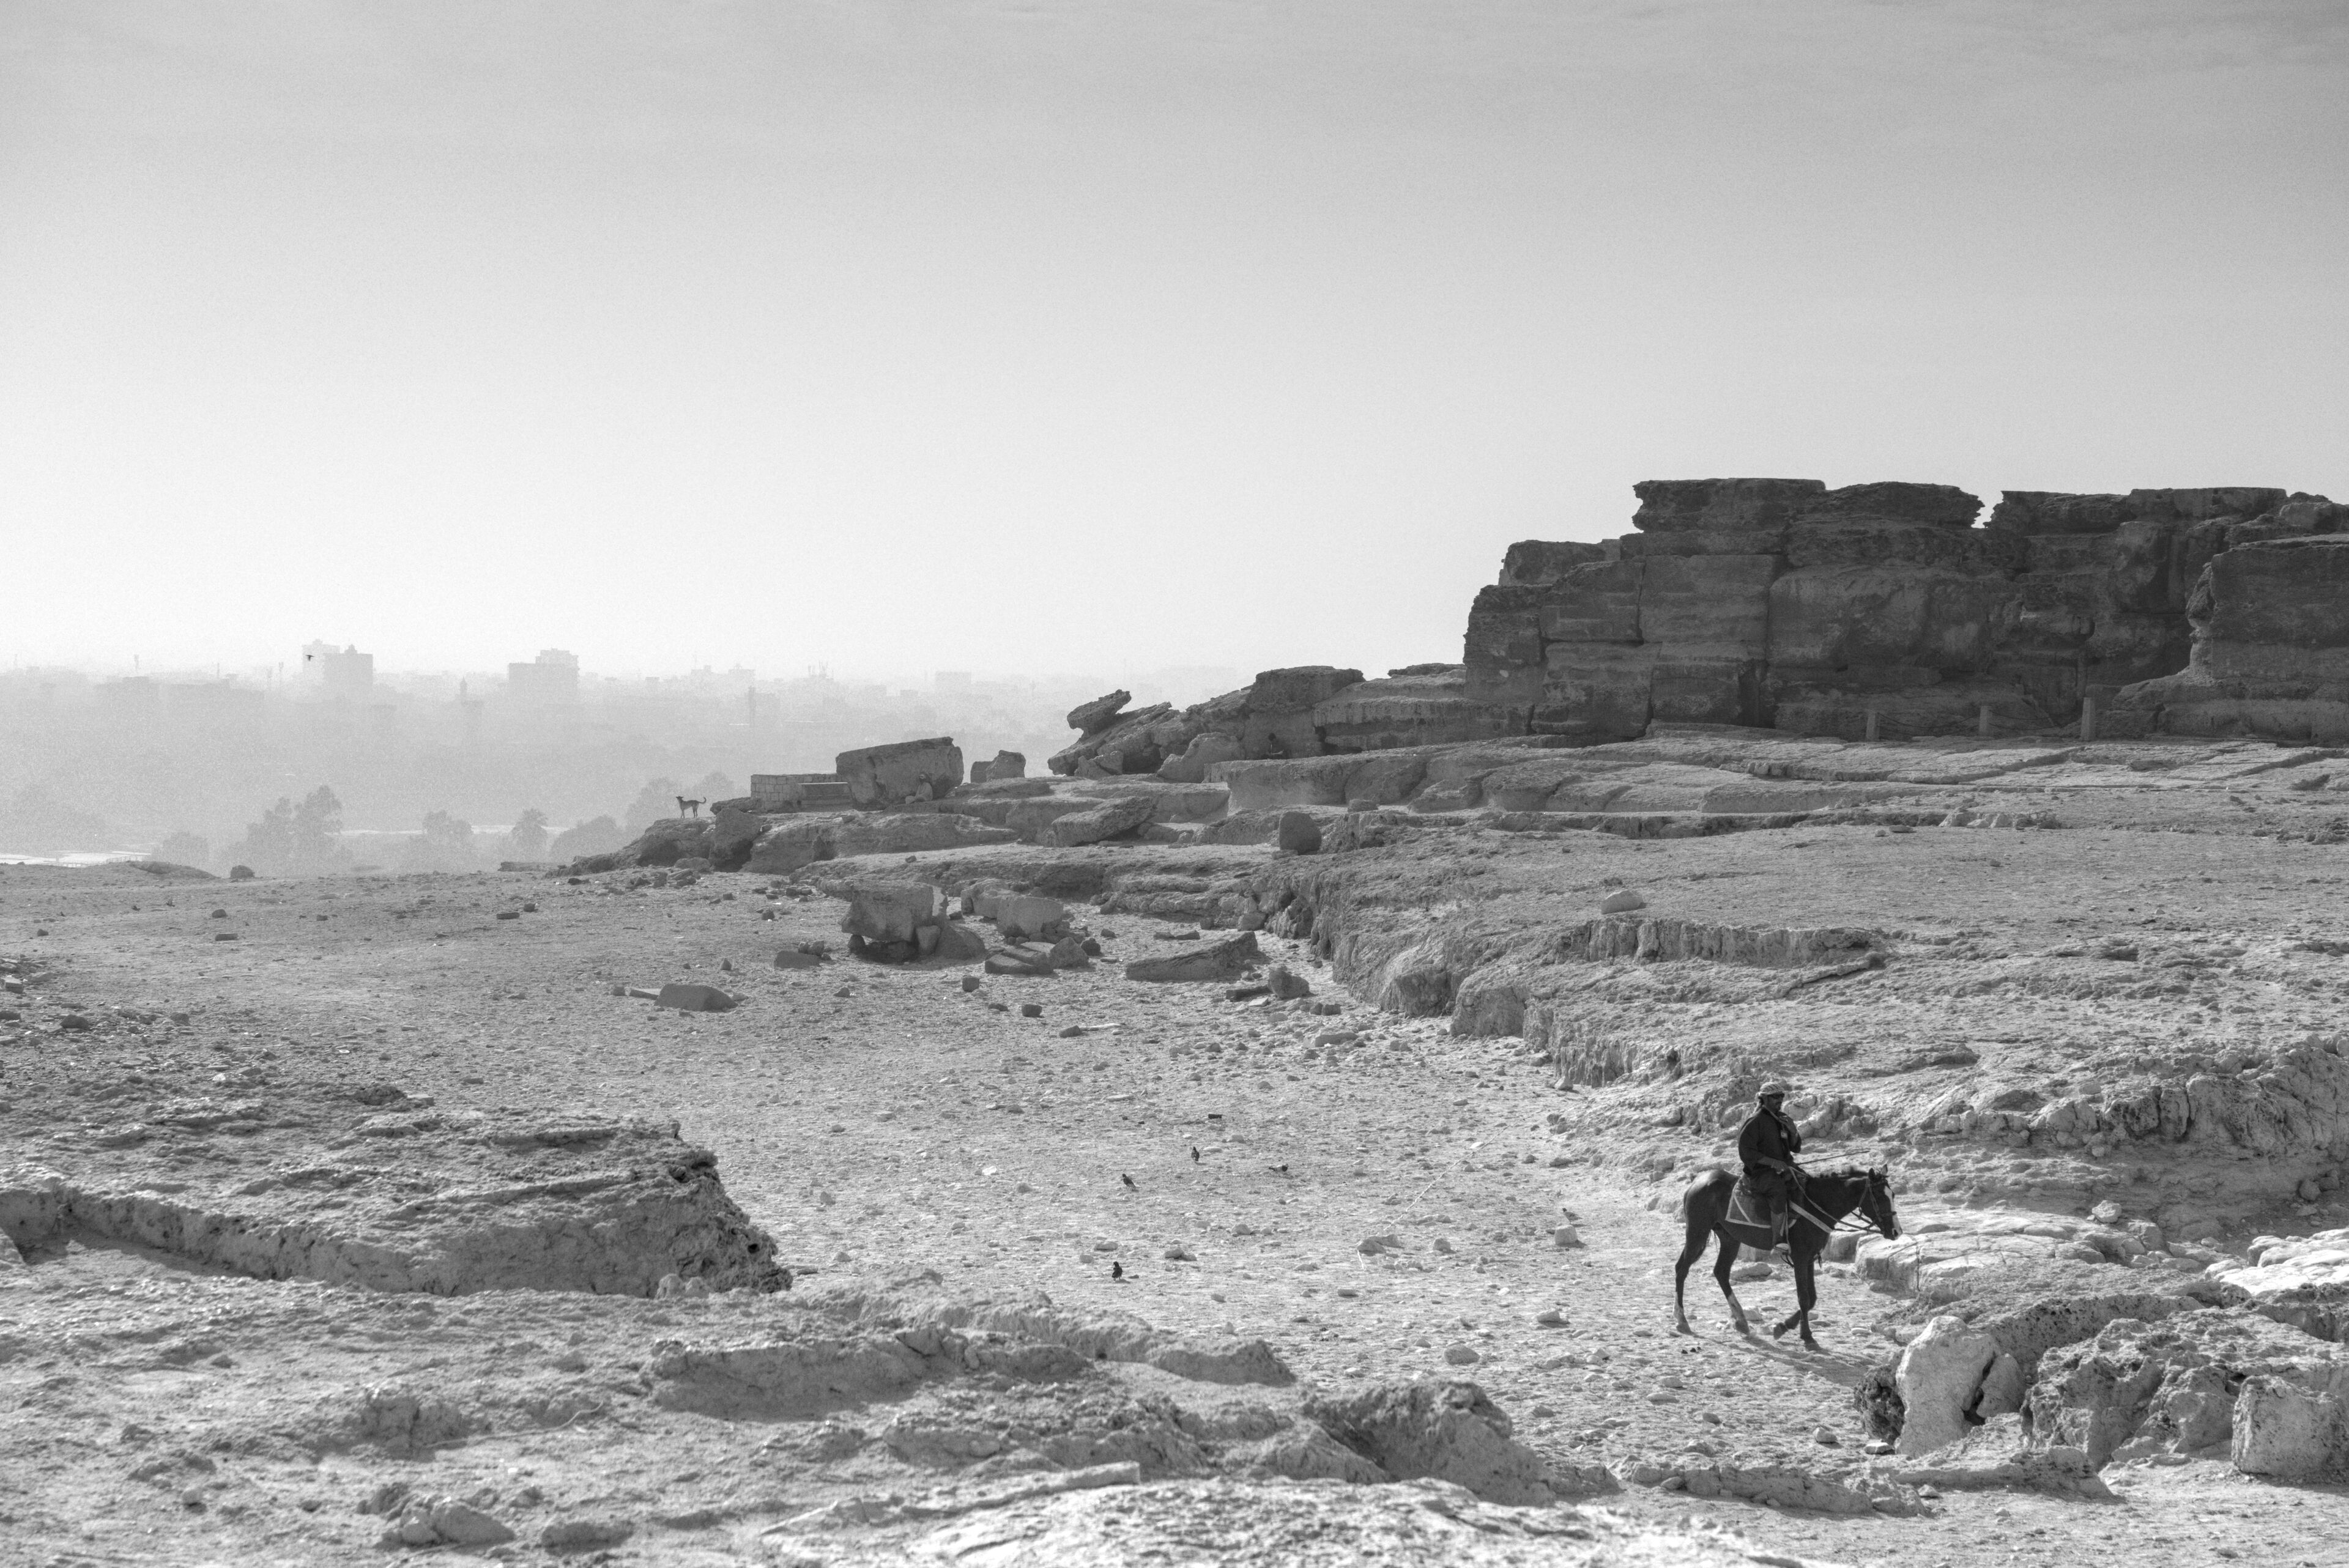 Edge of the Giza Pyramids site